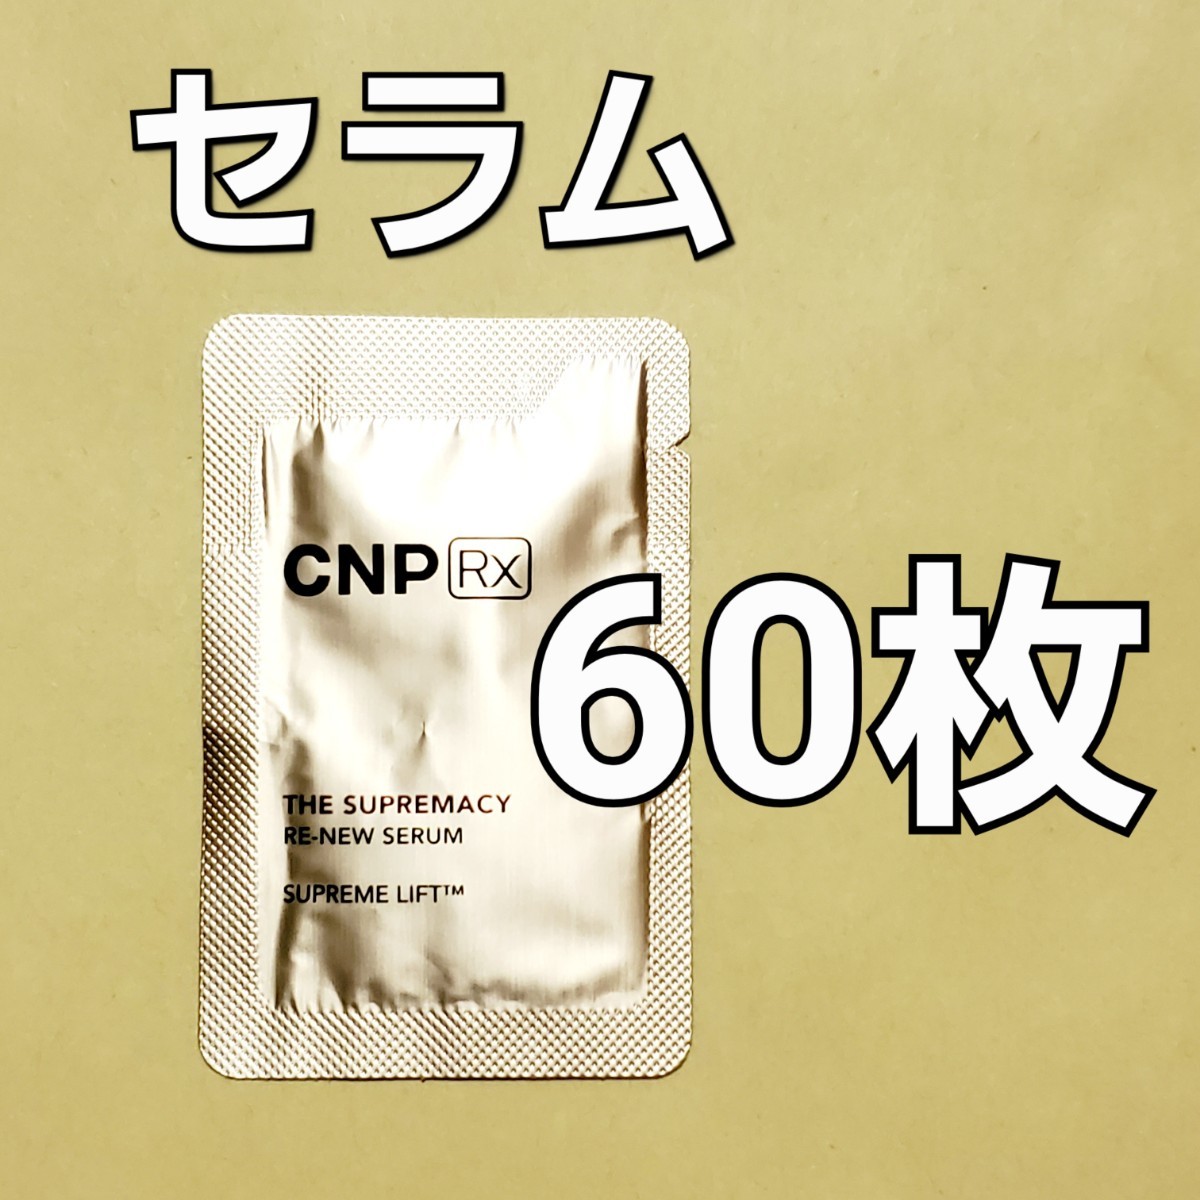 CNP Rx ザ スプリマシー リニュー セラム 1ml 60枚